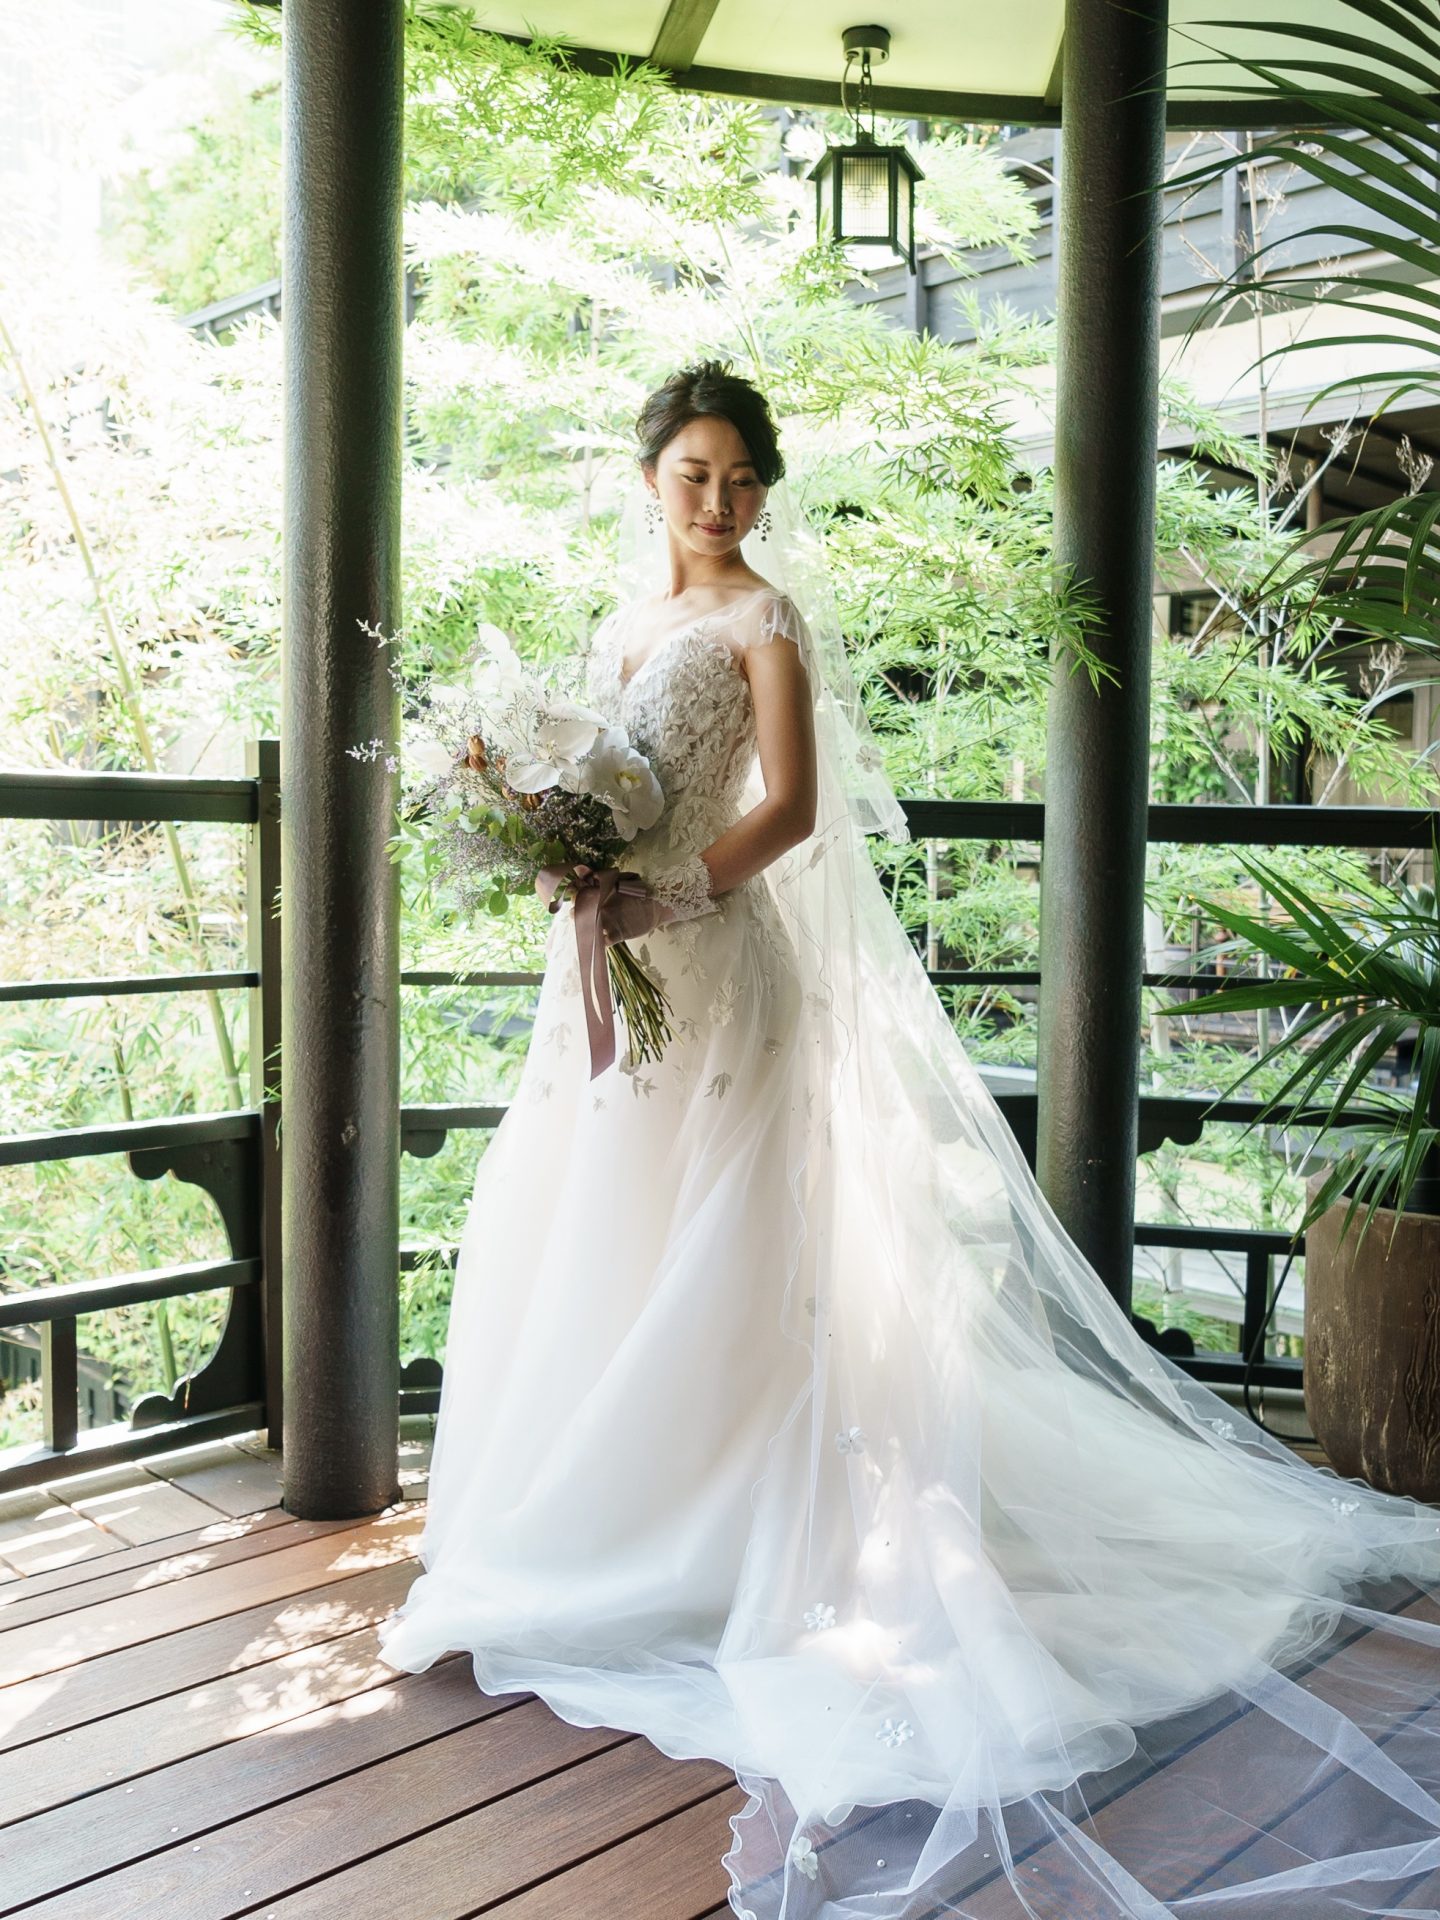 THE TREAT DRESSINGがザカワブンナゴヤでお式をする花嫁様におすすめするキャロリーナヘレラのウェディングドレス